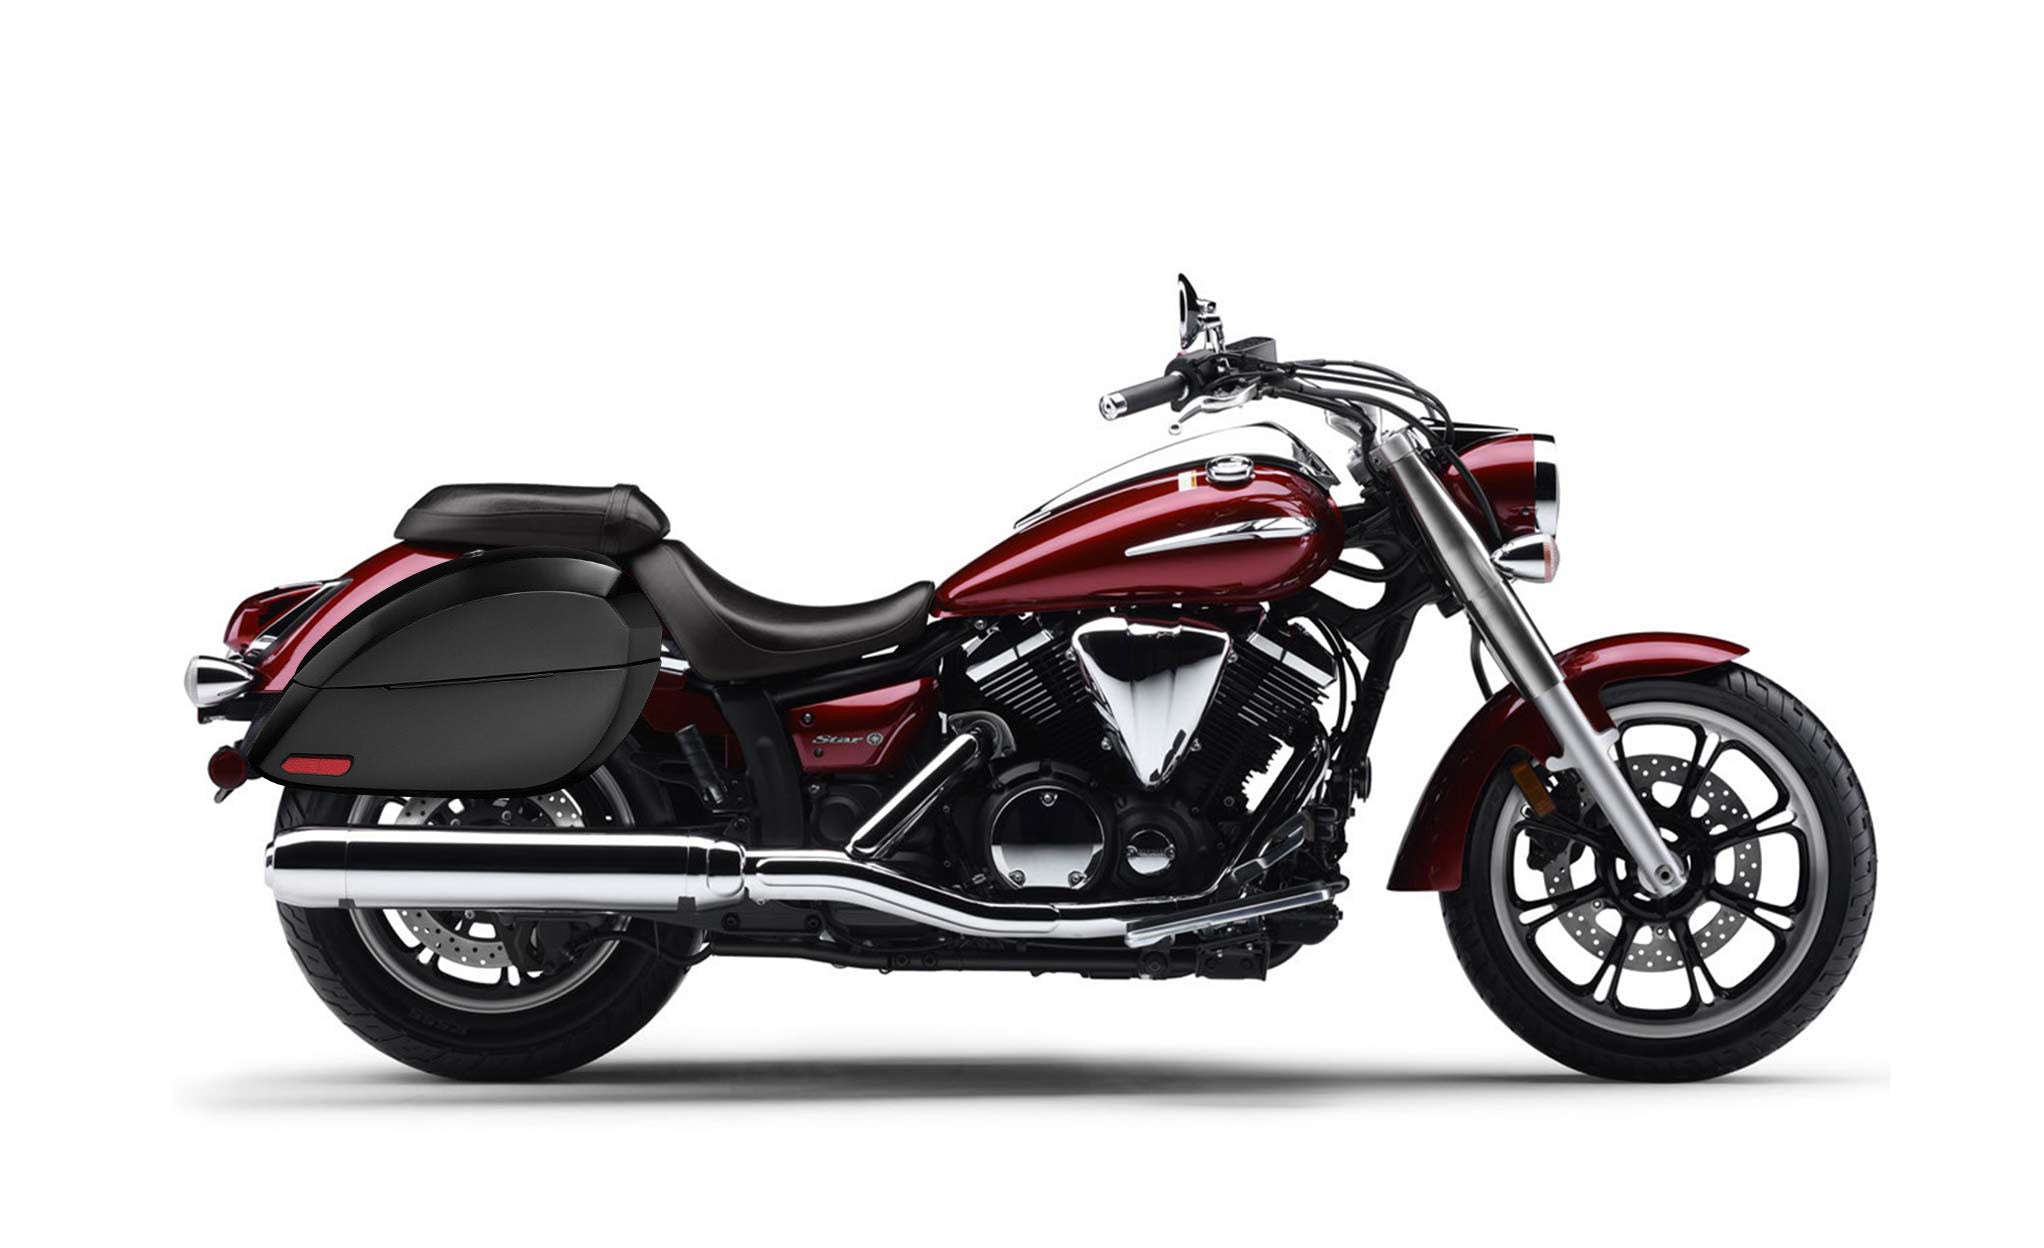 Viking Phantom Large Yamaha V Star 950 Painted Motorcycle Hard Saddlebags Engineering Excellence with Bag on Bike @expand